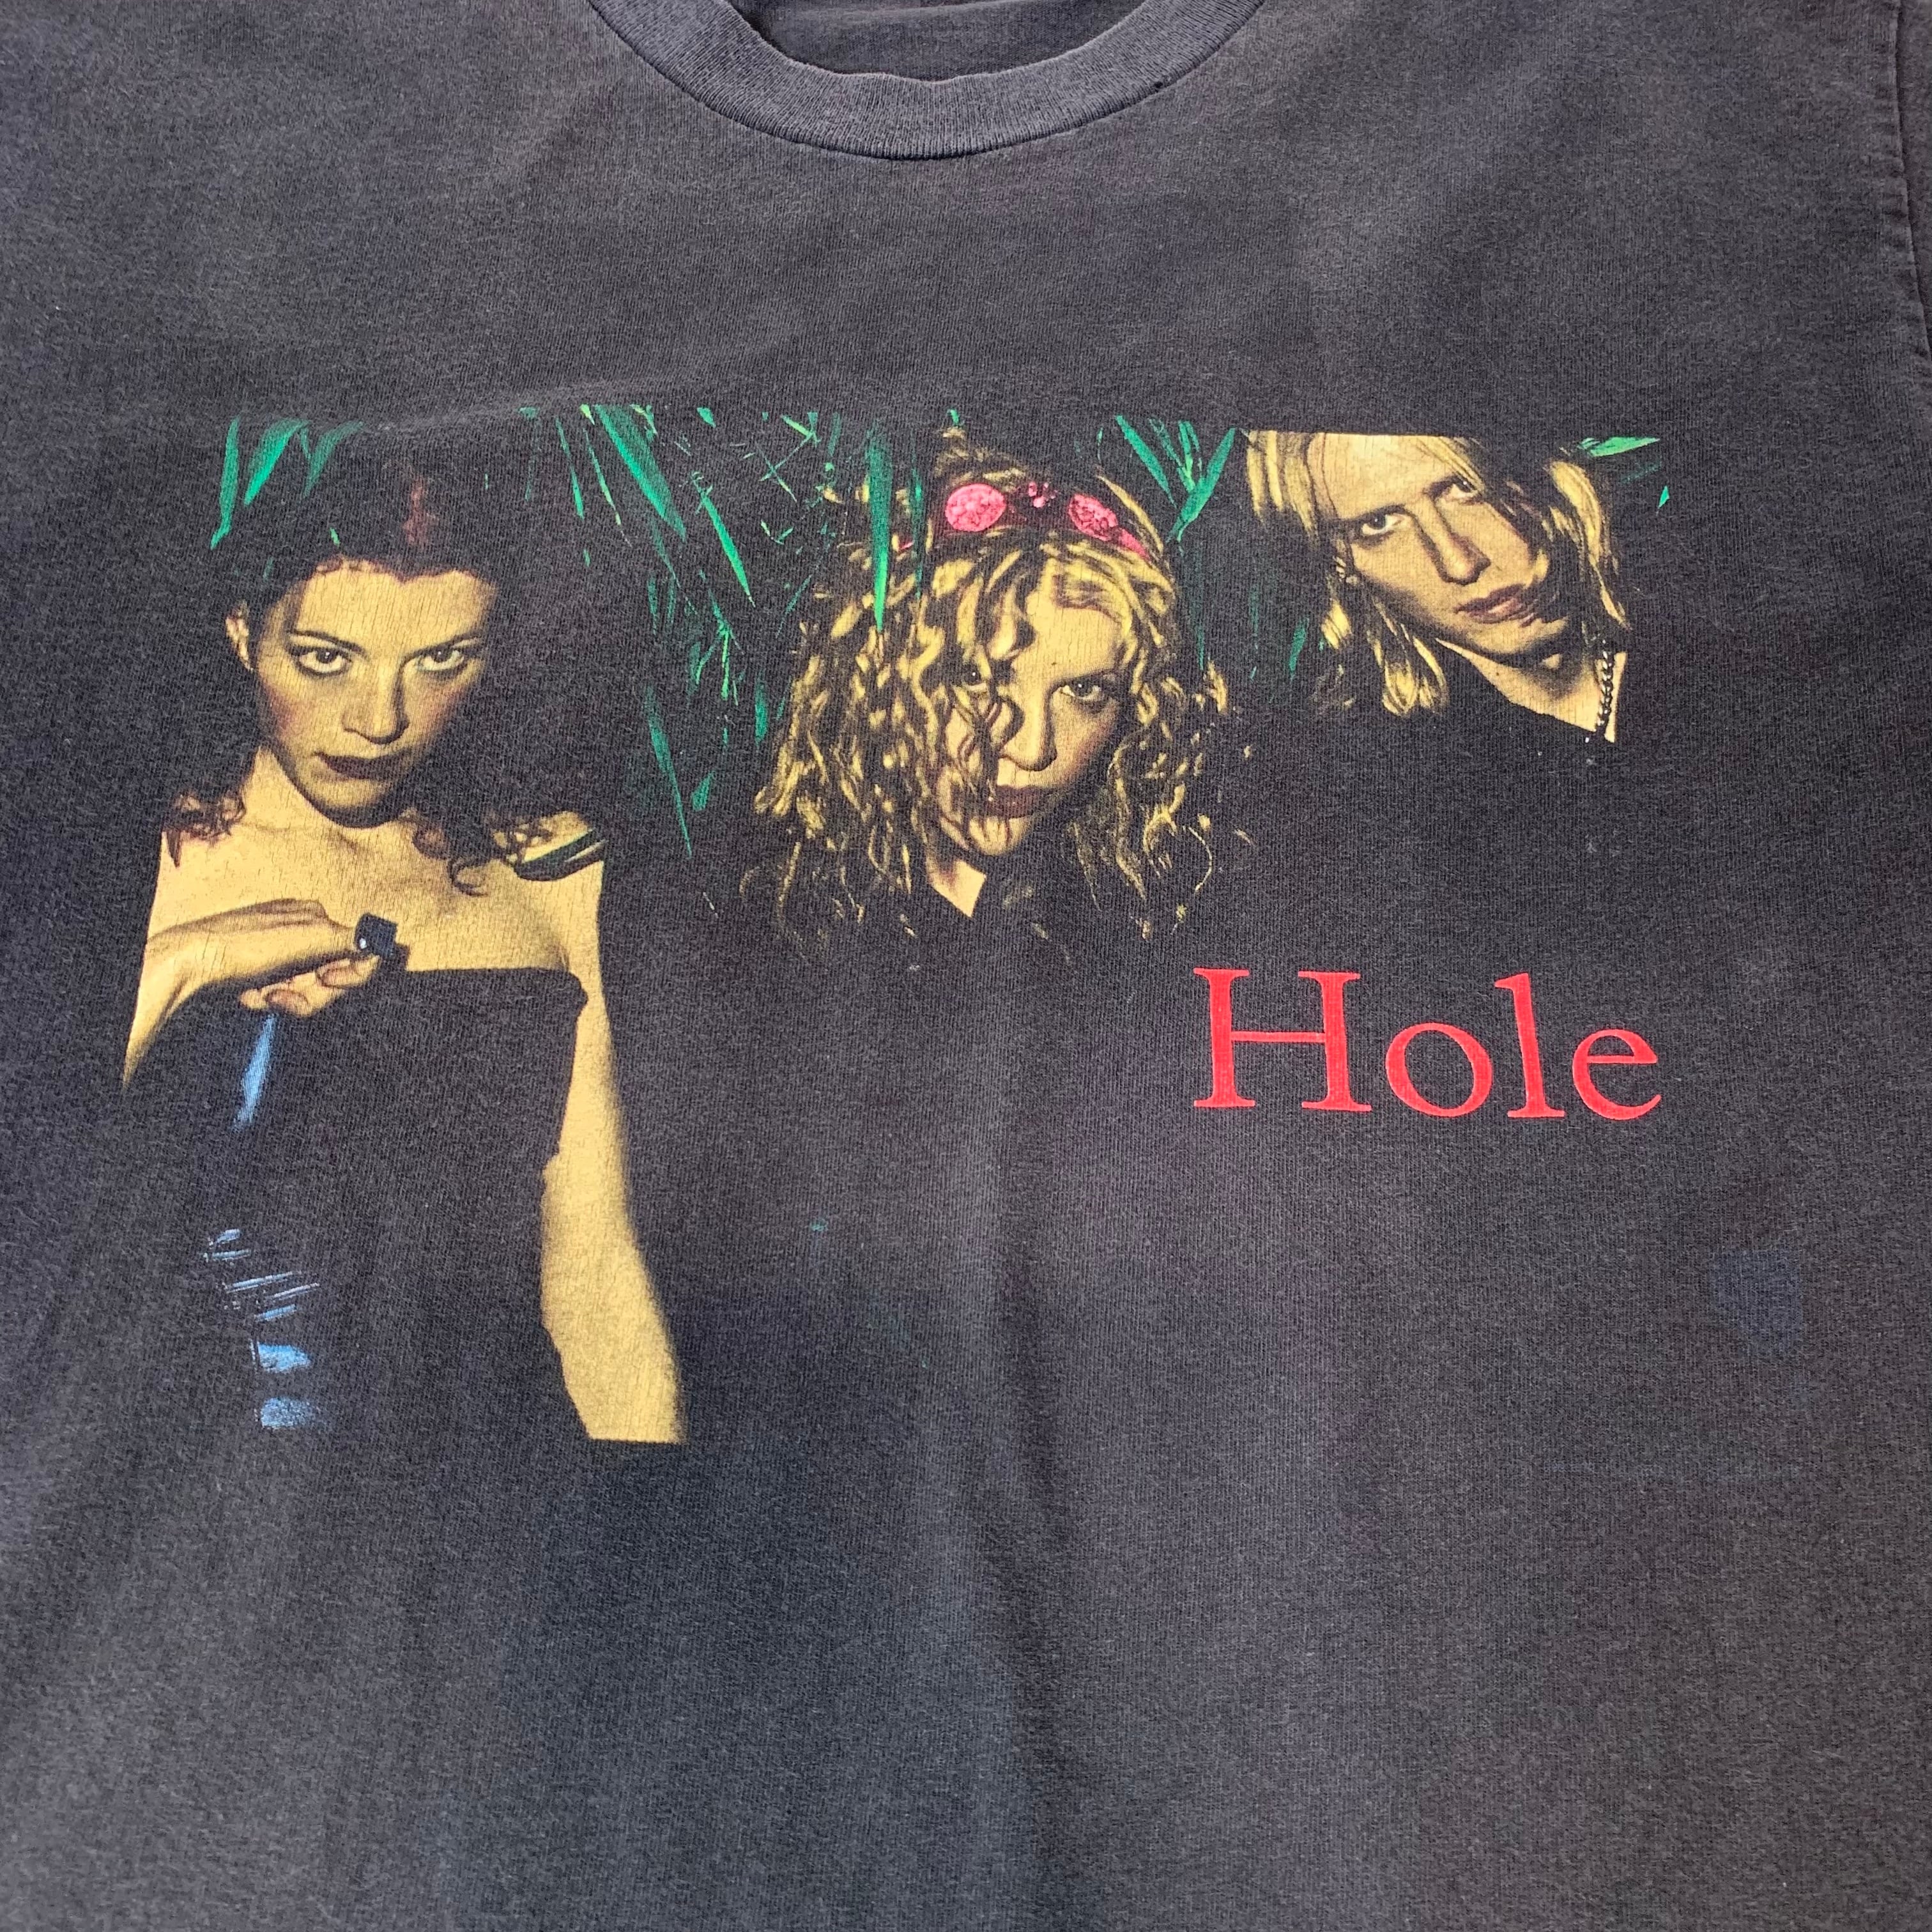 vintage 90s Hole BAND T-shirt TOUR T-shirt print T-shirt Courtney Love  プリントTシャツ バンドTシャツ ツアーTシャツ ホール コートニー・ラブ メンズ レディース ブラック 黒 ビンテージ ヴィンテージ